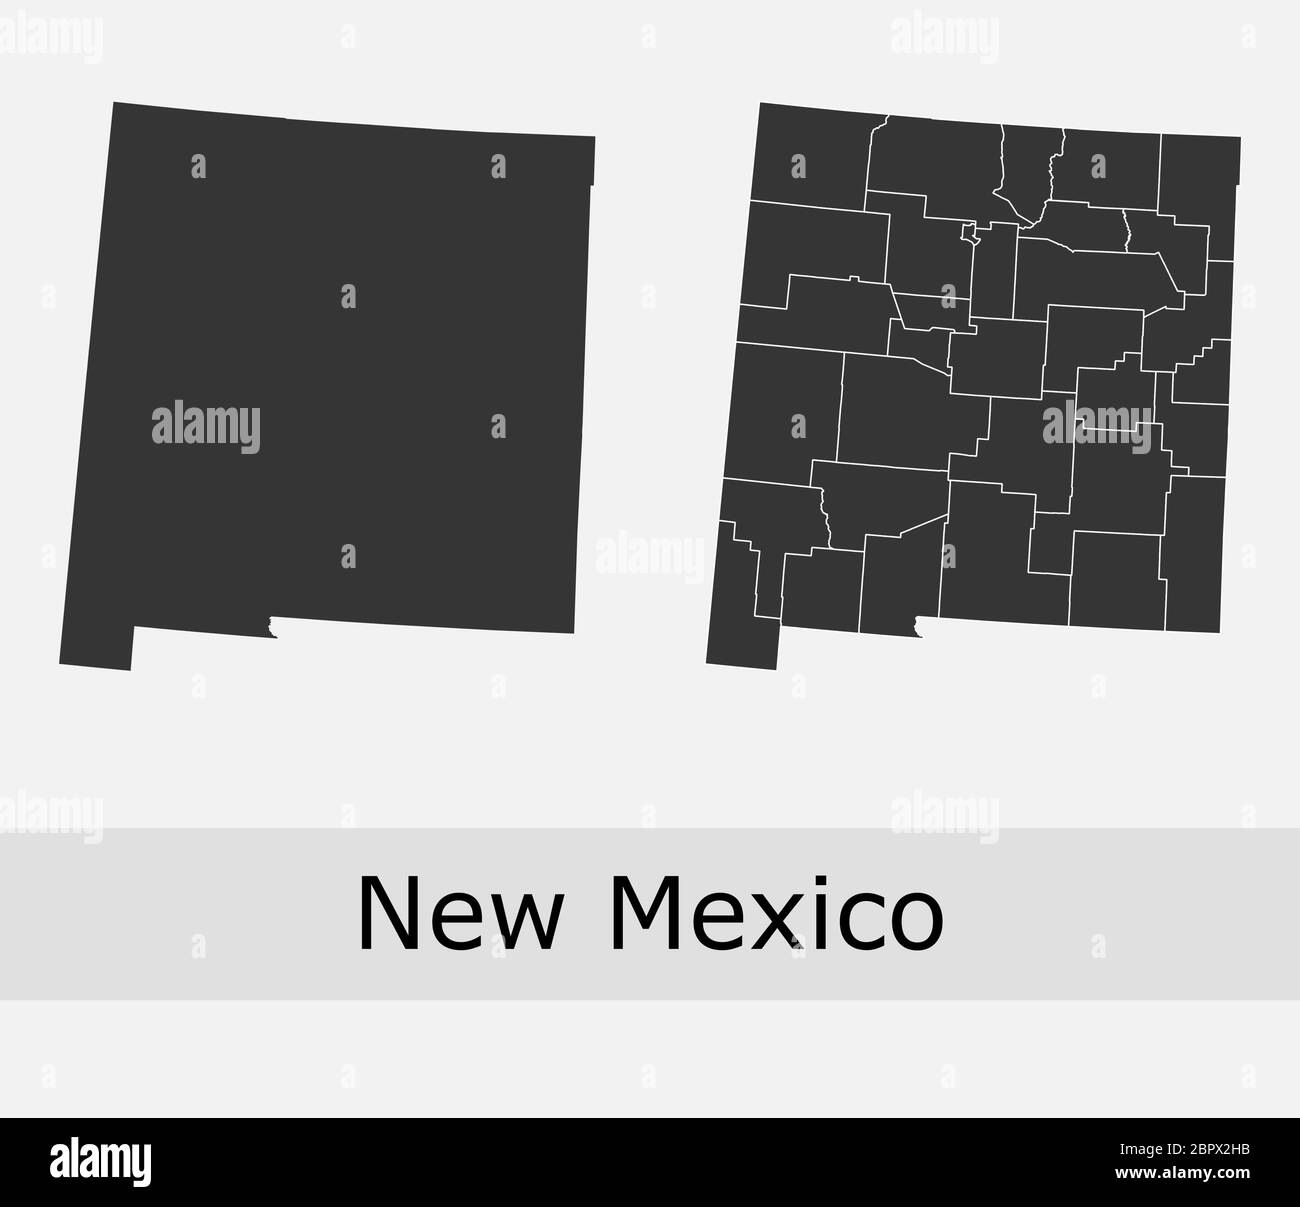 New Mexico Karten Vektor-Kontur Landkreise, Townships, Regionen, Gemeinden, Departements, Grenzen Stock Vektor